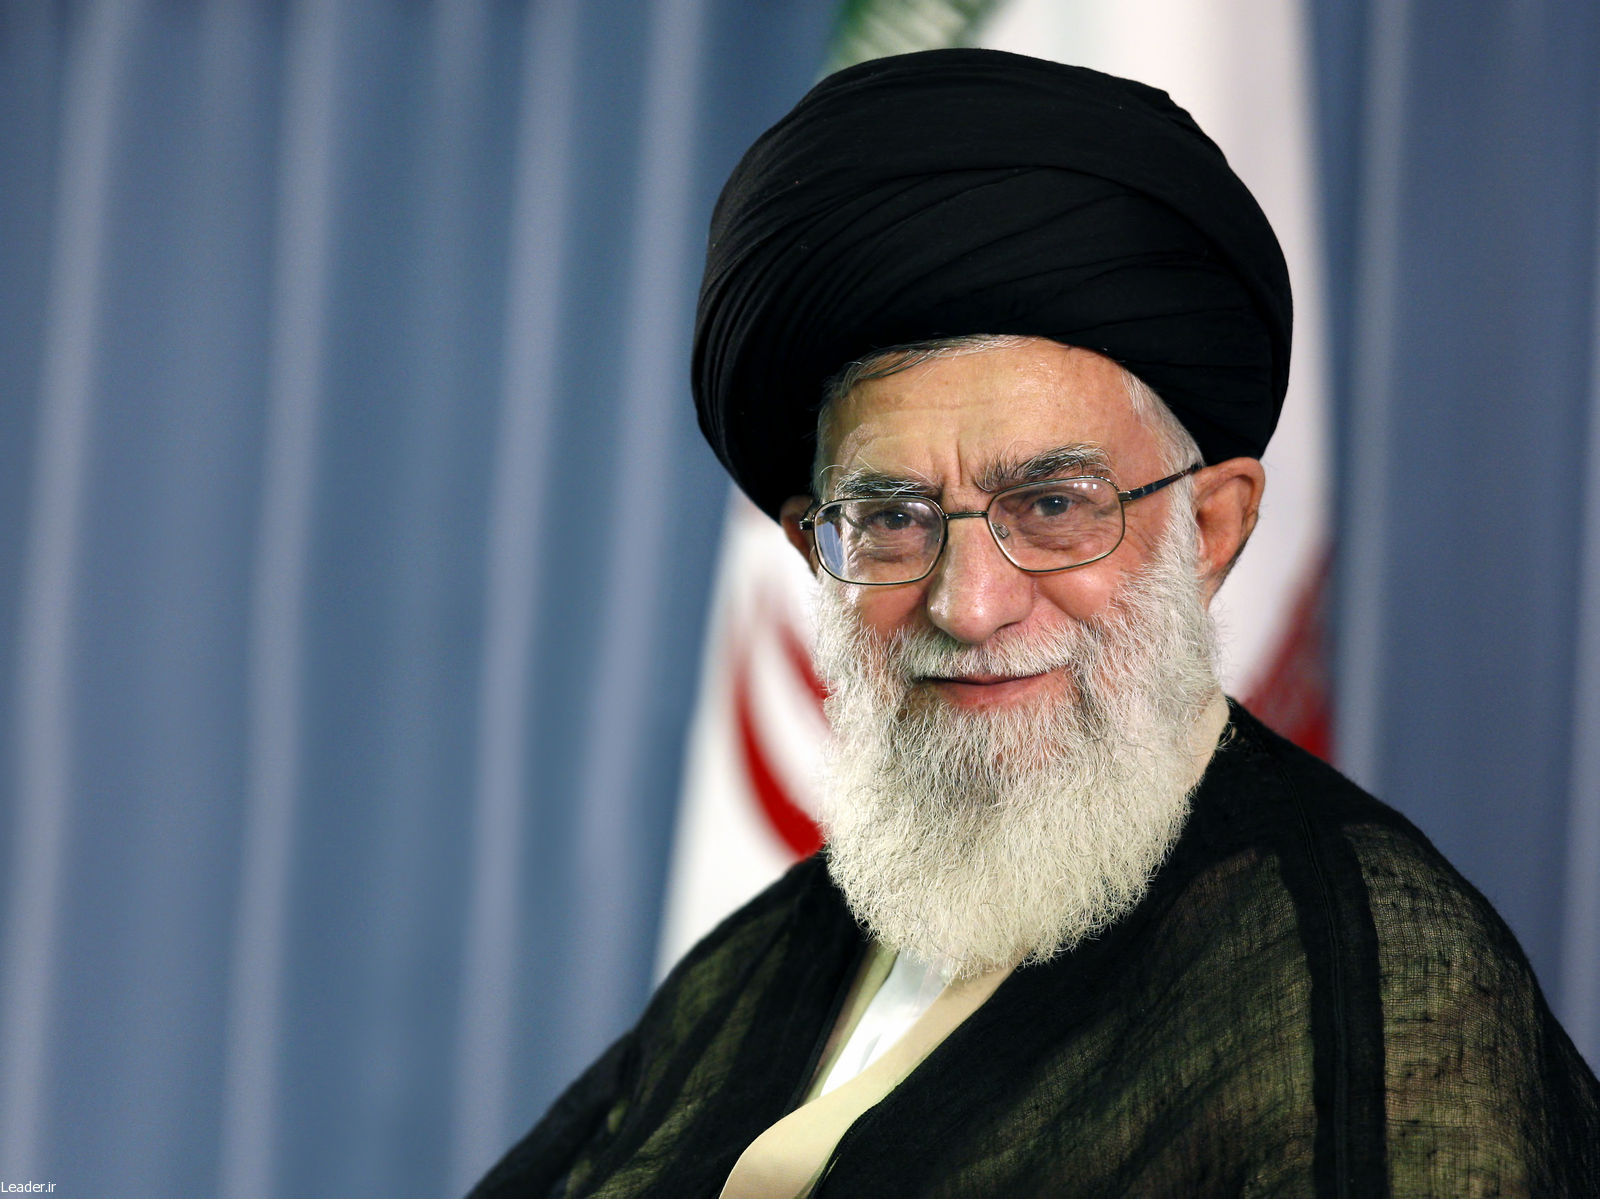 سپاس از ملت آگاه و مصمم ایران که مردمسالاری دینی را در چهره درخشان خود به جهانیان نشان دادند